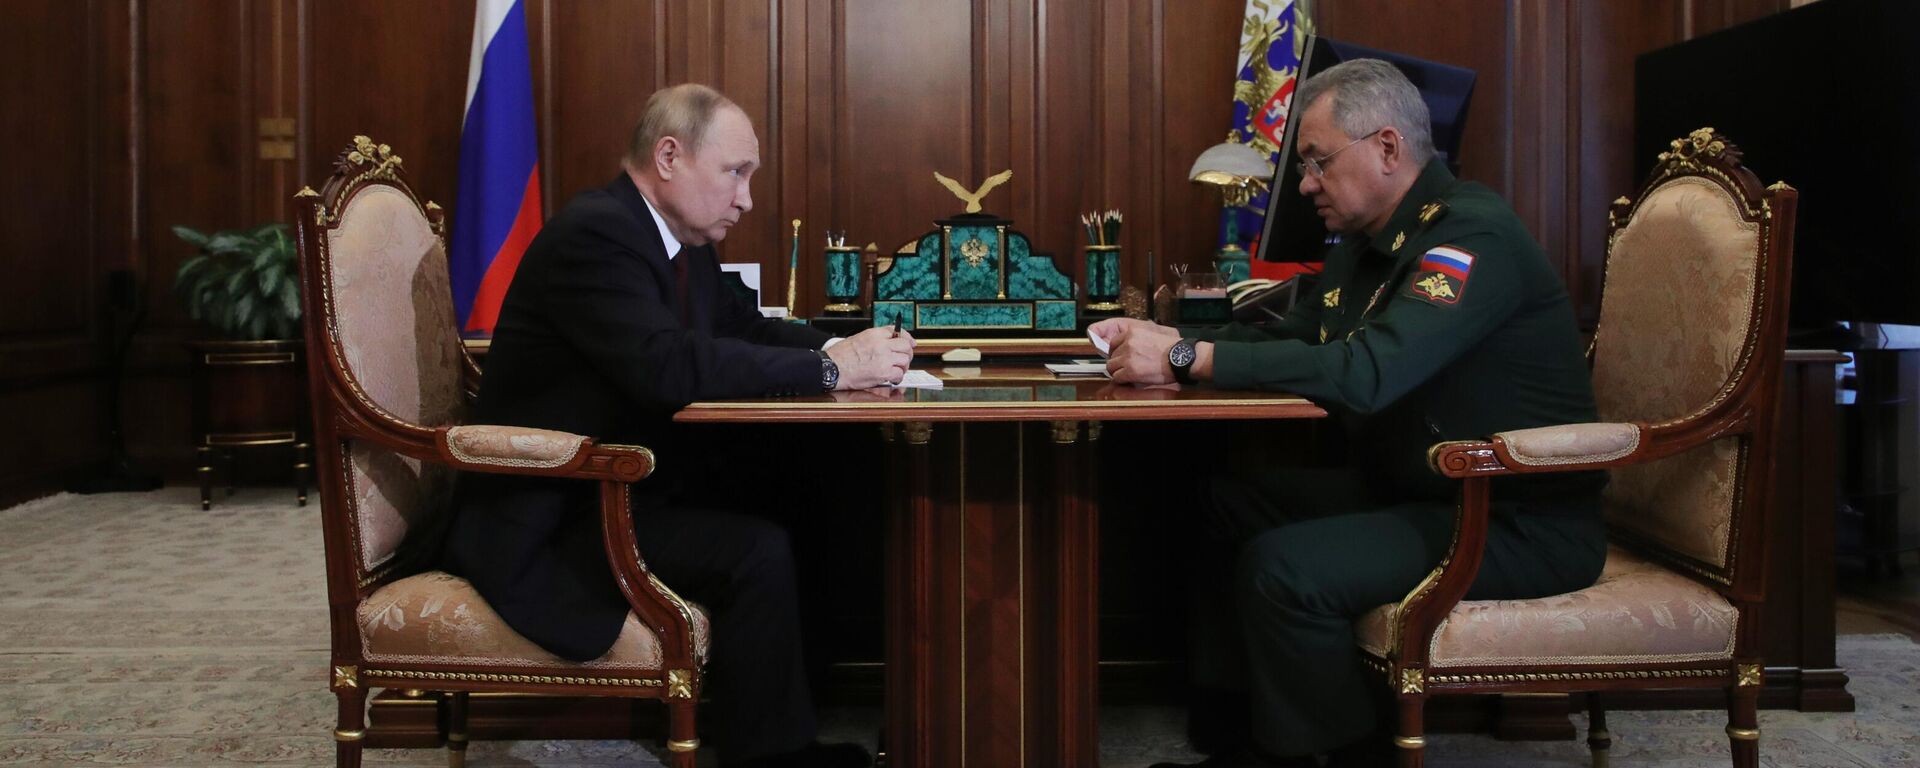 Vladimir Putin, presidente de Rusia, y Serguéi Shoigú, ministro de Defensa de Rusia, durante su reunión en Moscú, el 4 de julio del 2022 - Sputnik Mundo, 1920, 04.07.2022